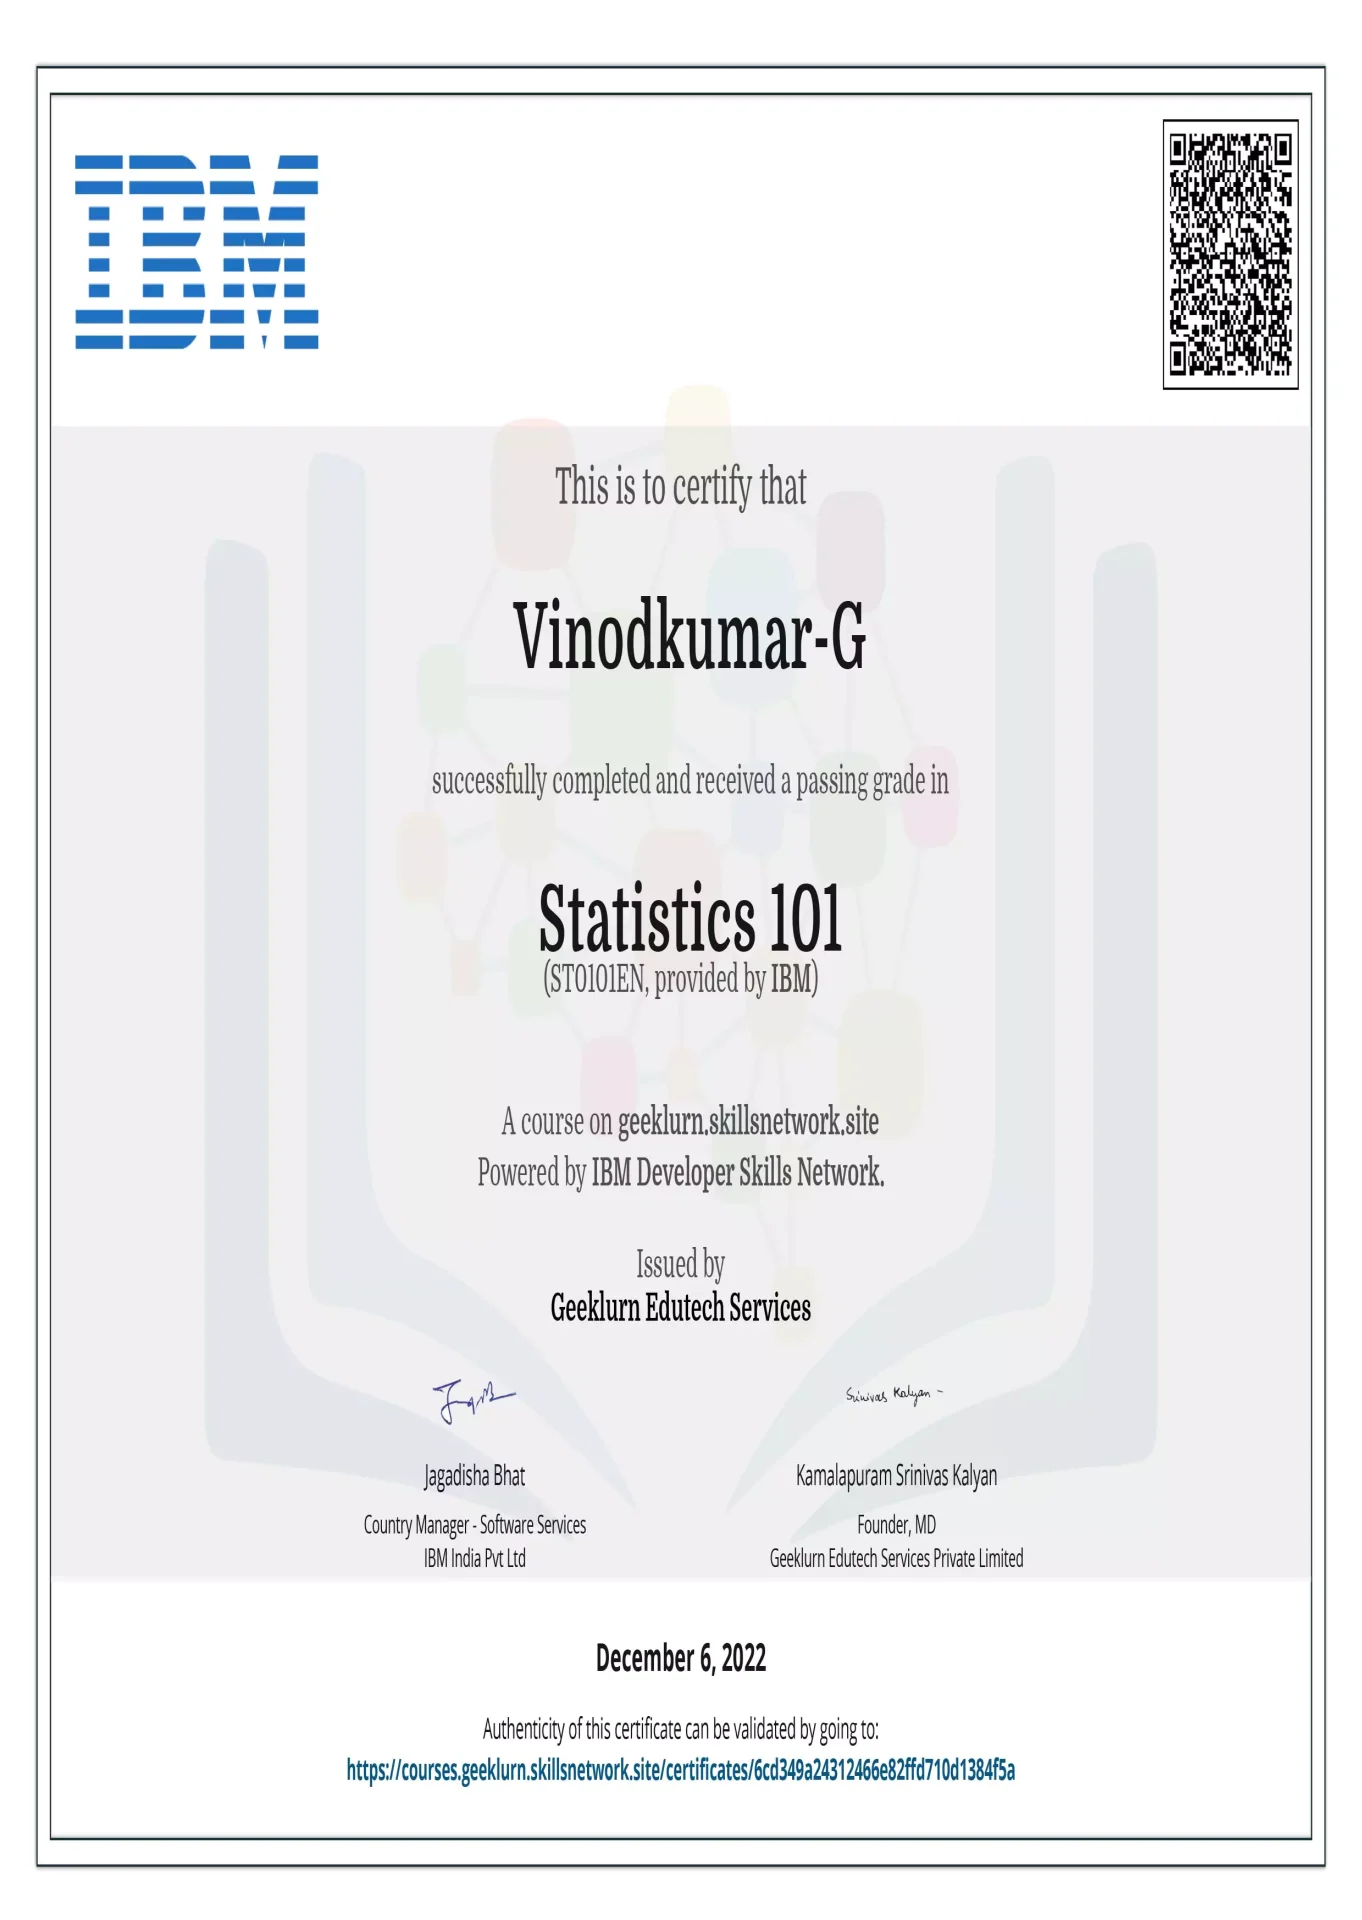 ibm-st0101en-certificate-geeklurn-edutech-services-statistics101